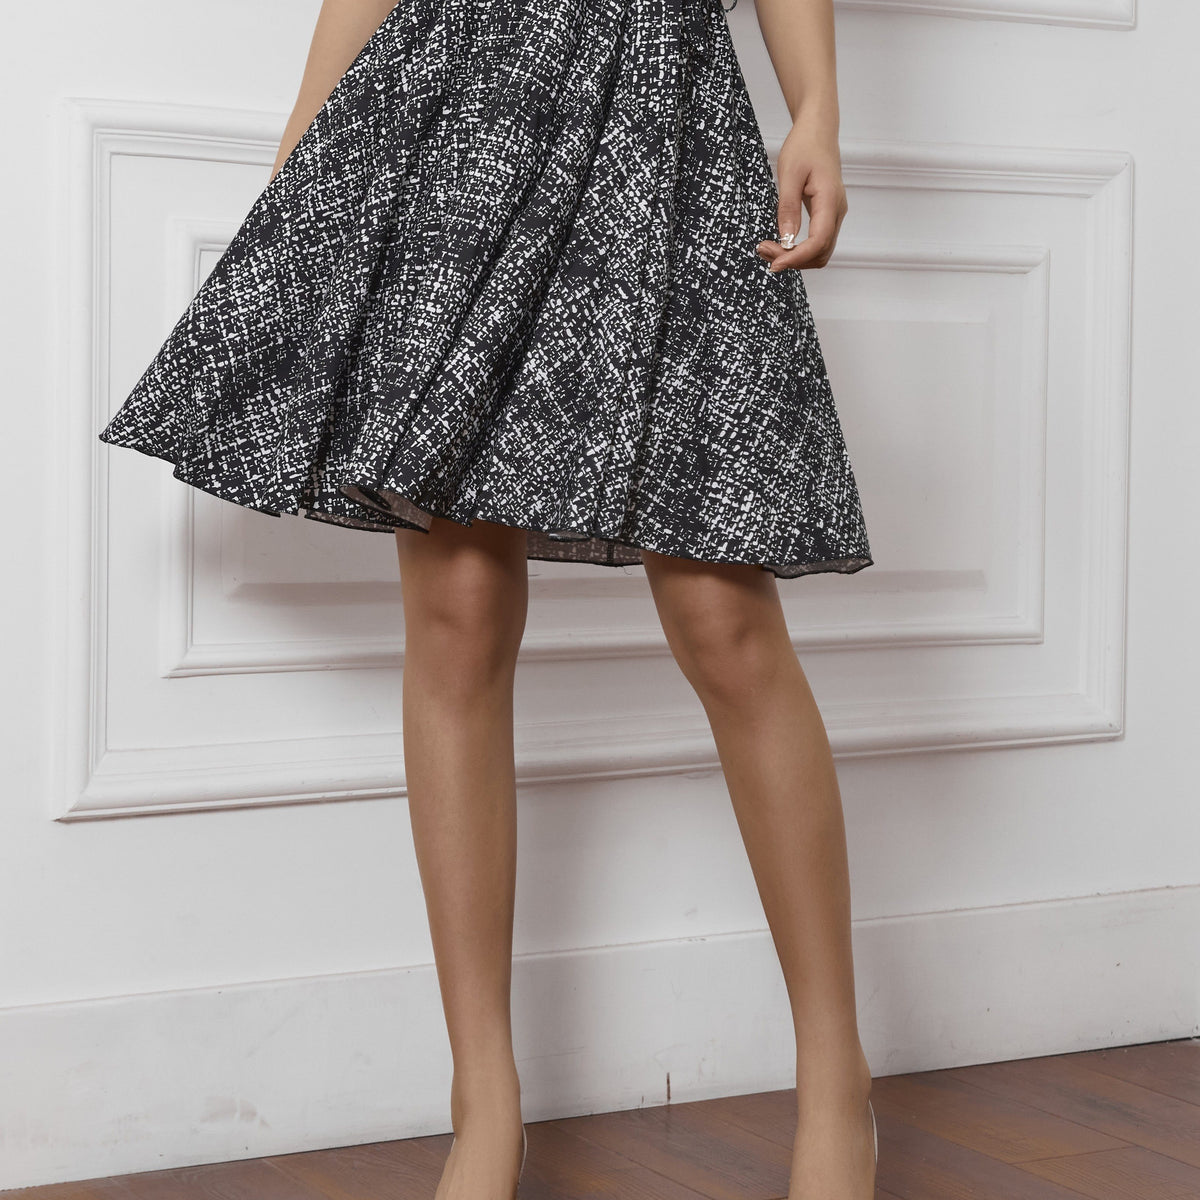 Allover Print Tie Waist Skirt, Elegant Swing Skirt For Spring & Summer, Women's Clothing